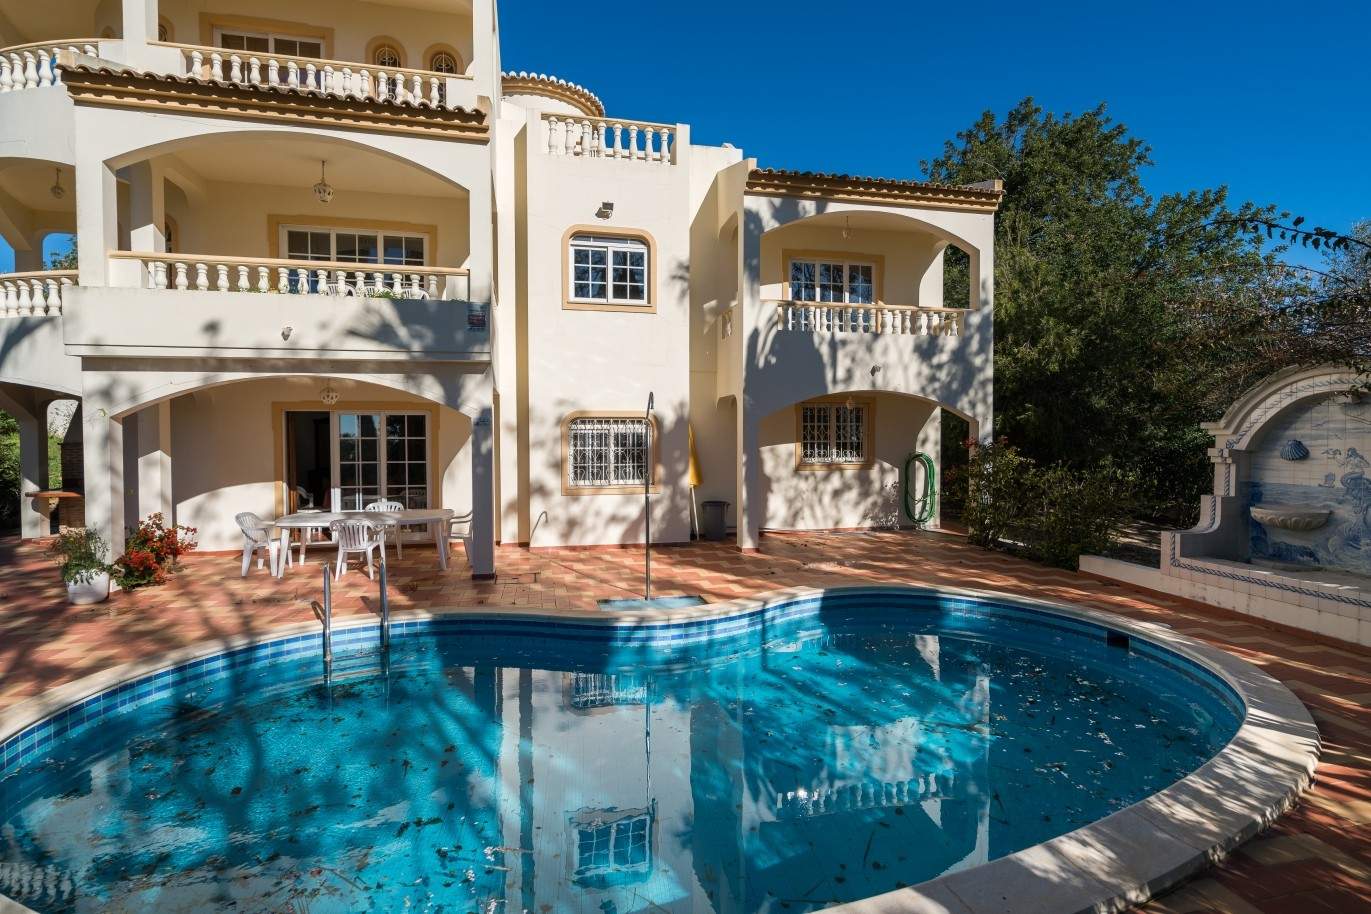 Venda de moradia, com vistas mar e piscina, Loulé, Algarve_73744